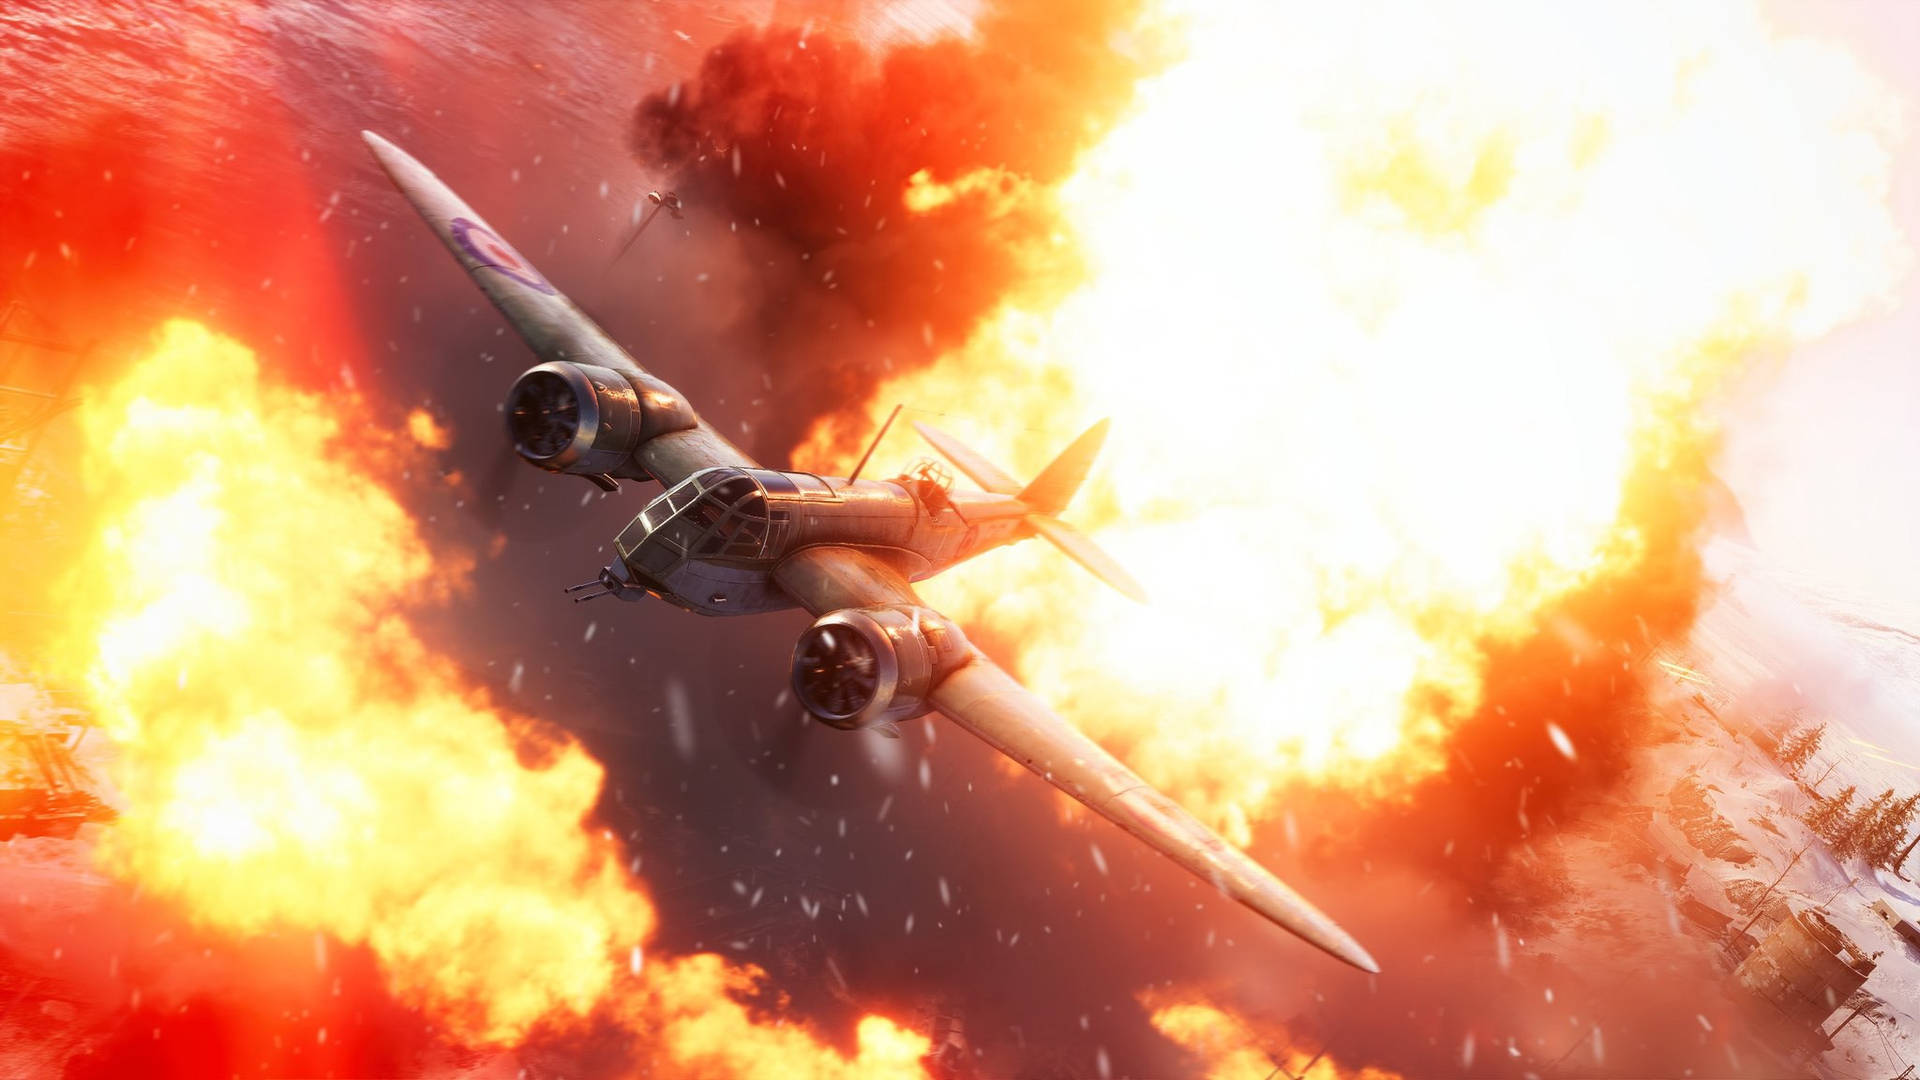 Battlefield 5 Explosionsudladning: Få et skud af dette vilde og energi-fyldte design. Wallpaper